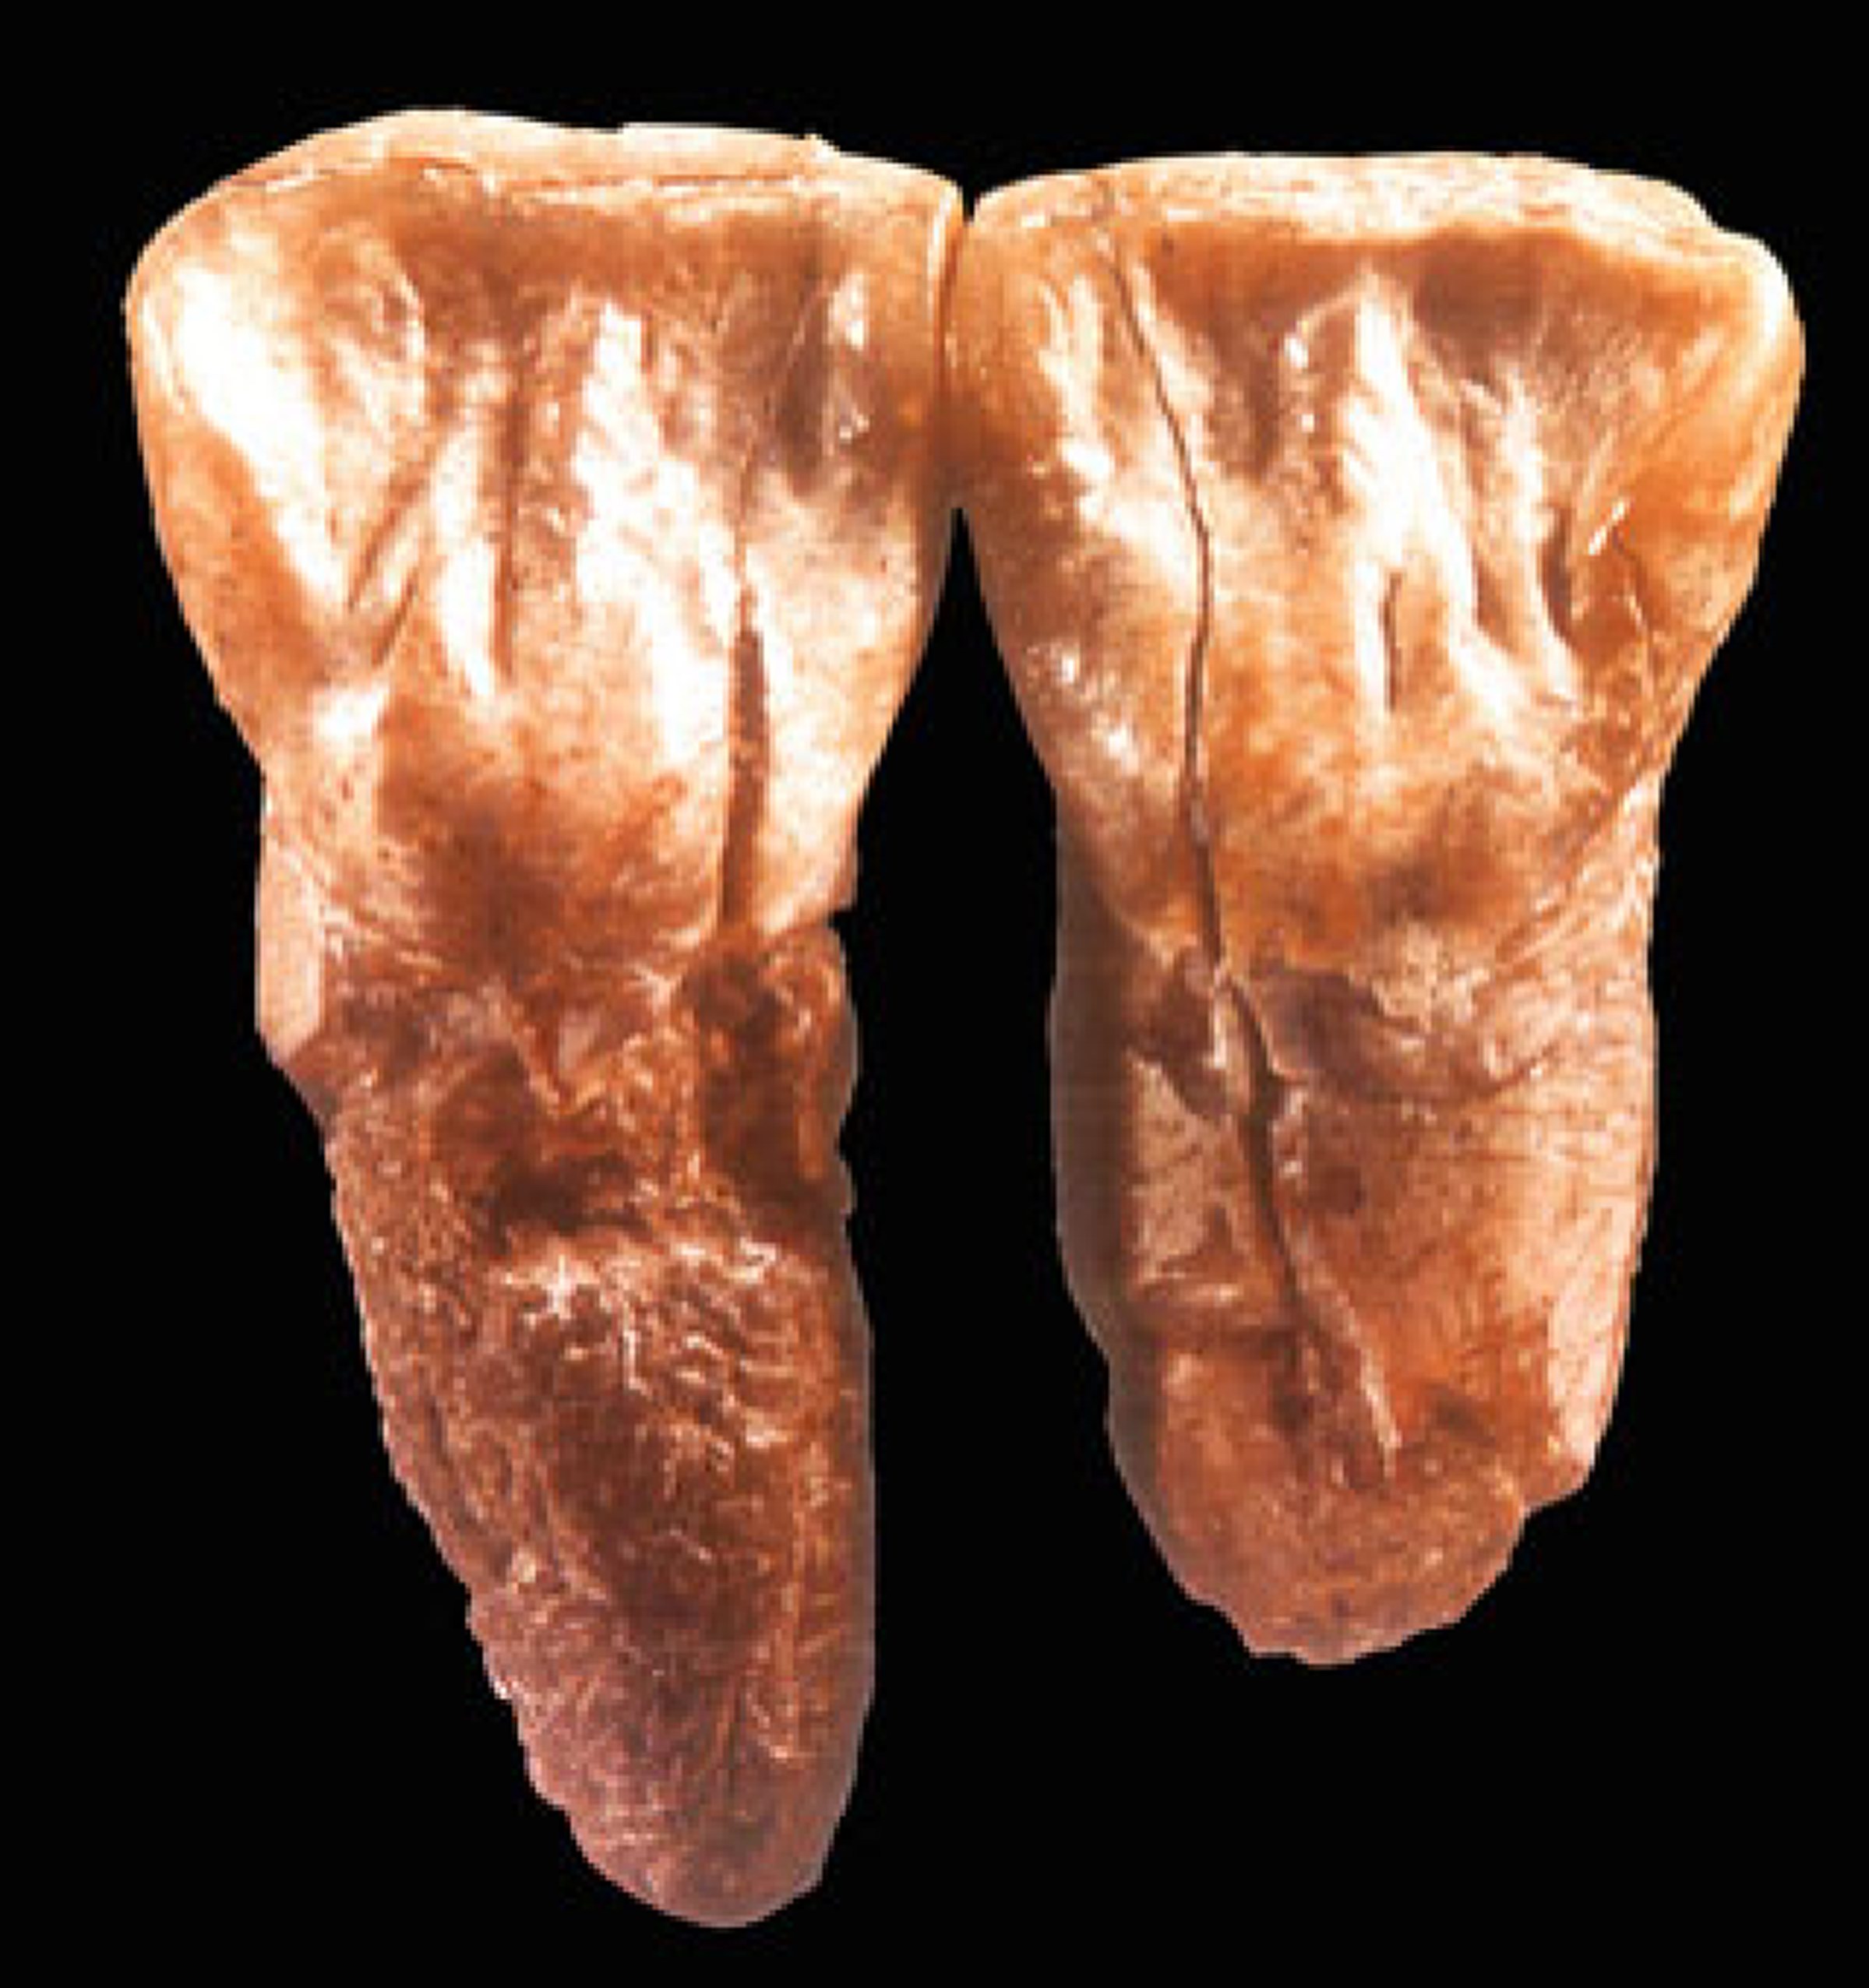 元谋人牙齿(引自朱日祥等论文)禄丰古猿的雌(左)雄(右)头骨西瓦古猿